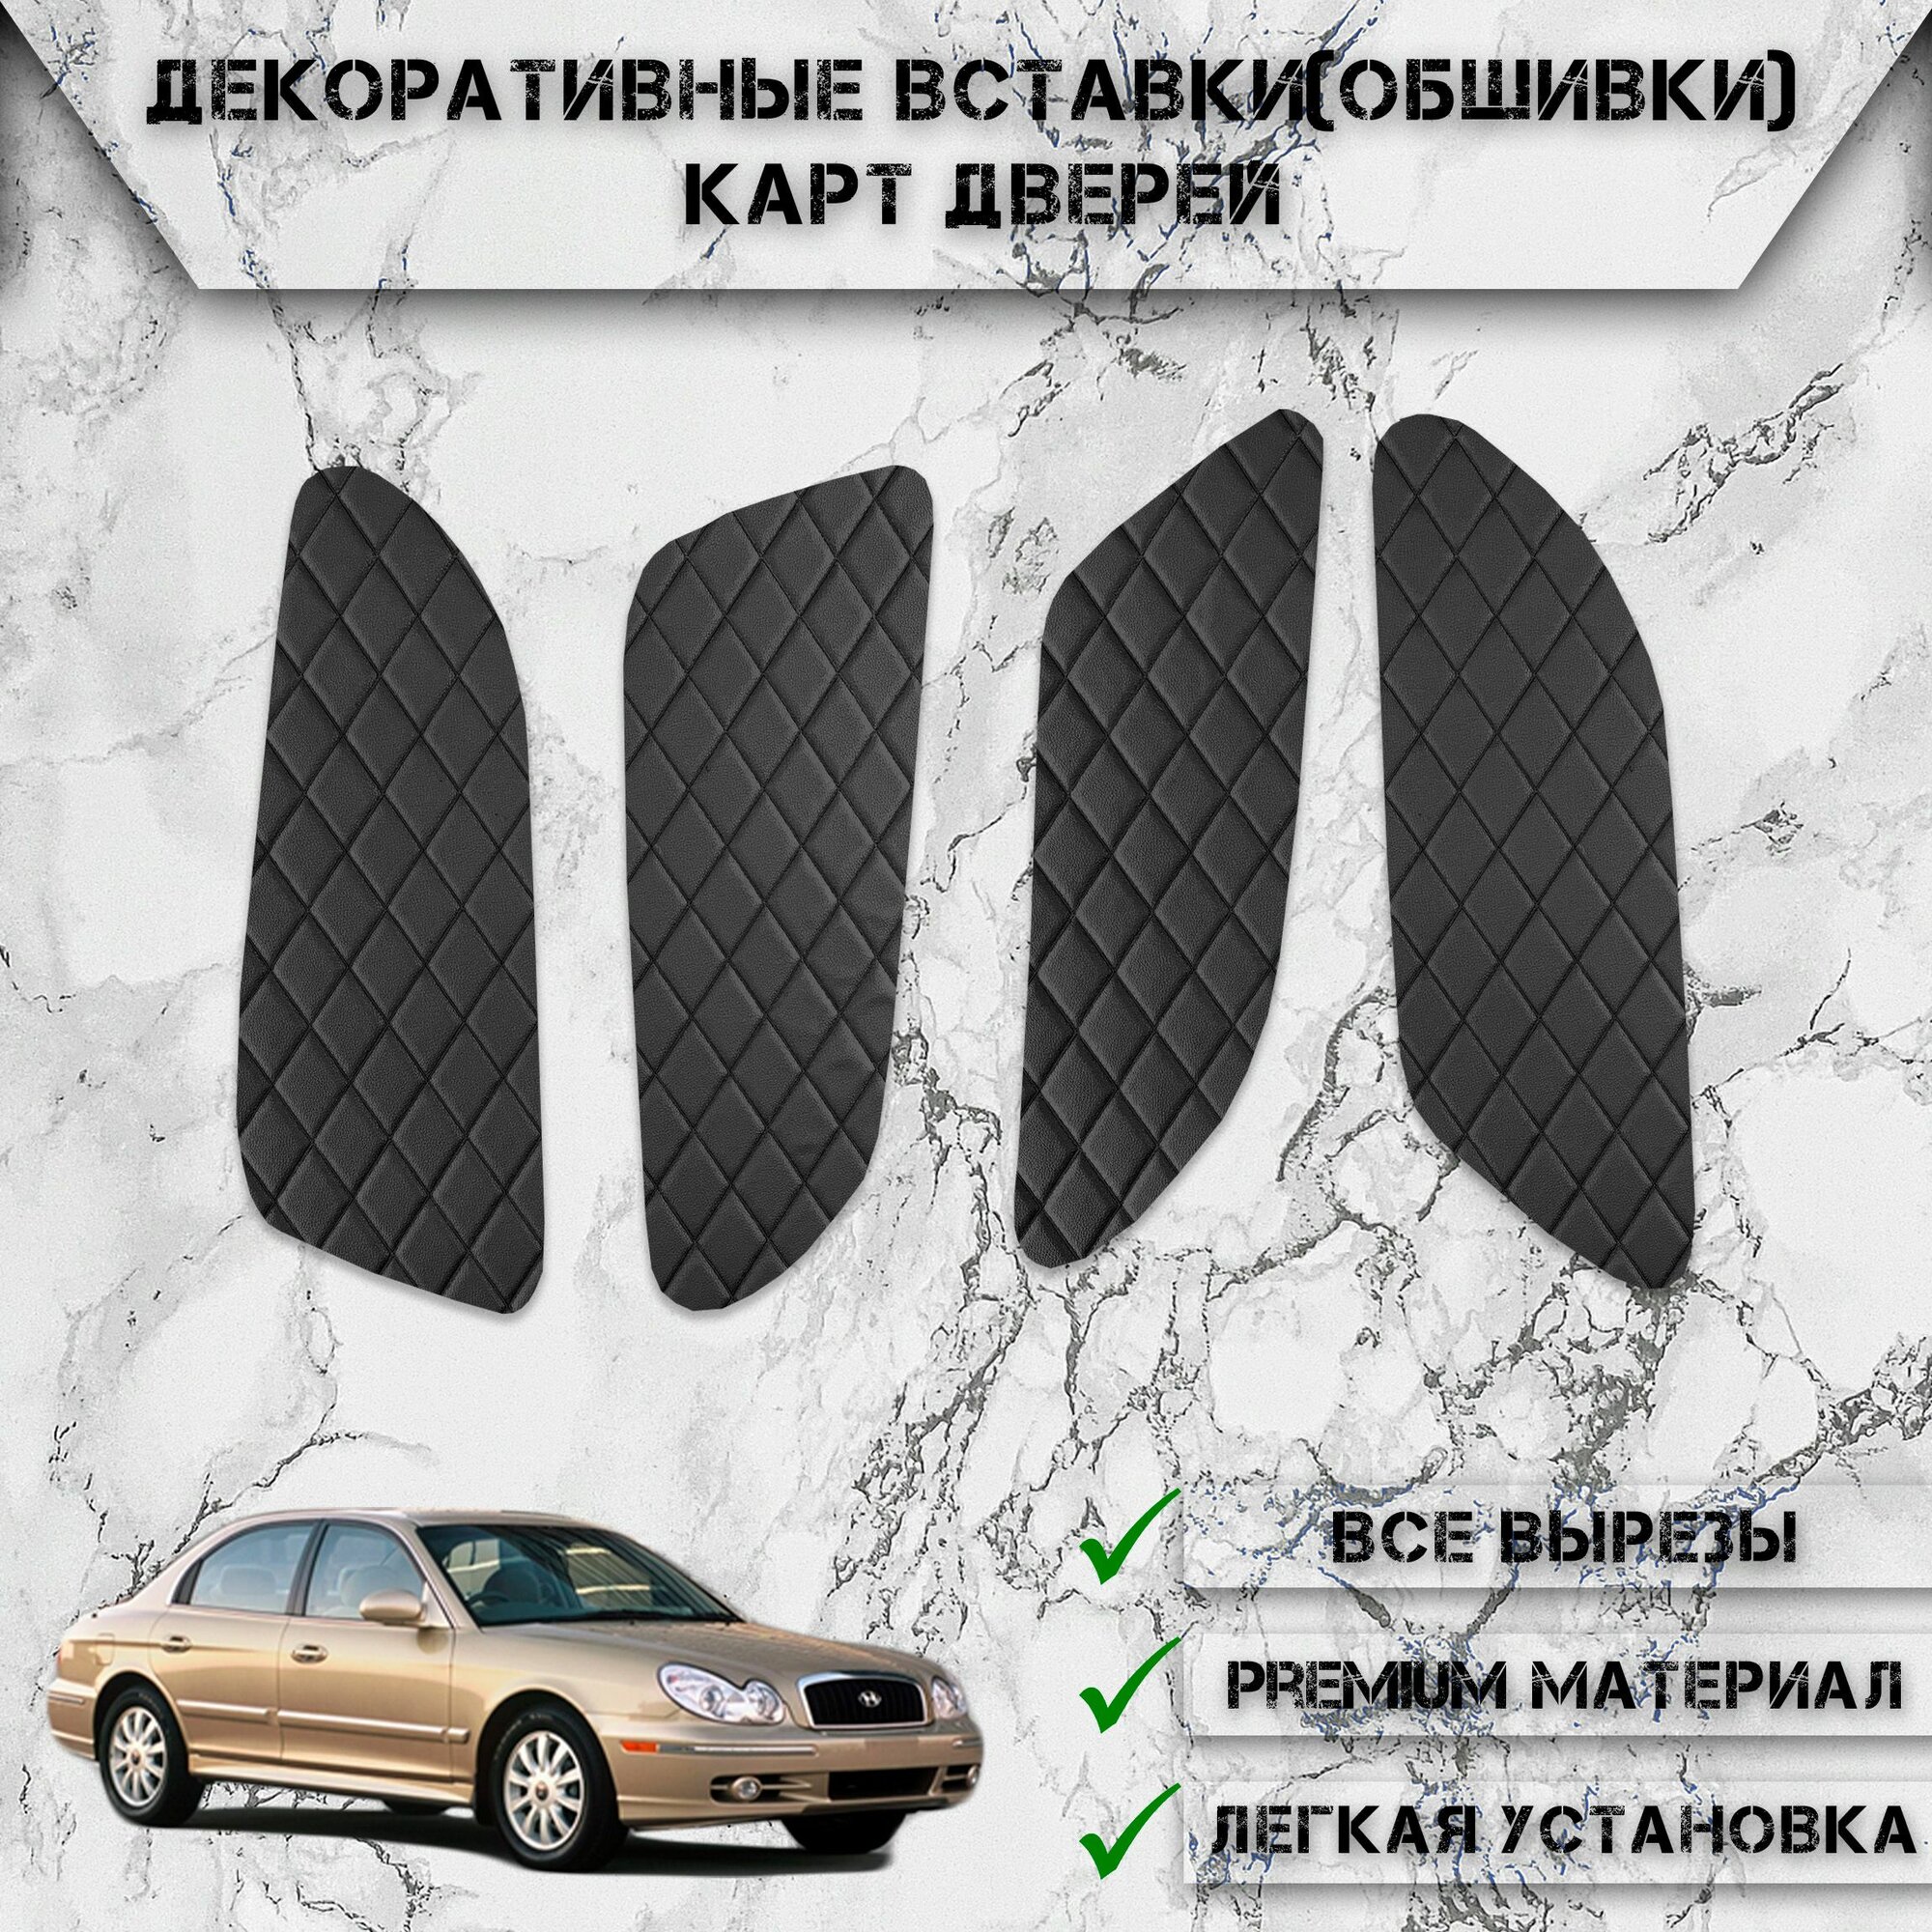 Декоративные вставки обшивки карт дверей из Экокожи для Хюндай Соната ЕФ / Hyundai Sonata EF 2001-2012 (Ромб) Чёрные с Чёрной строчкой